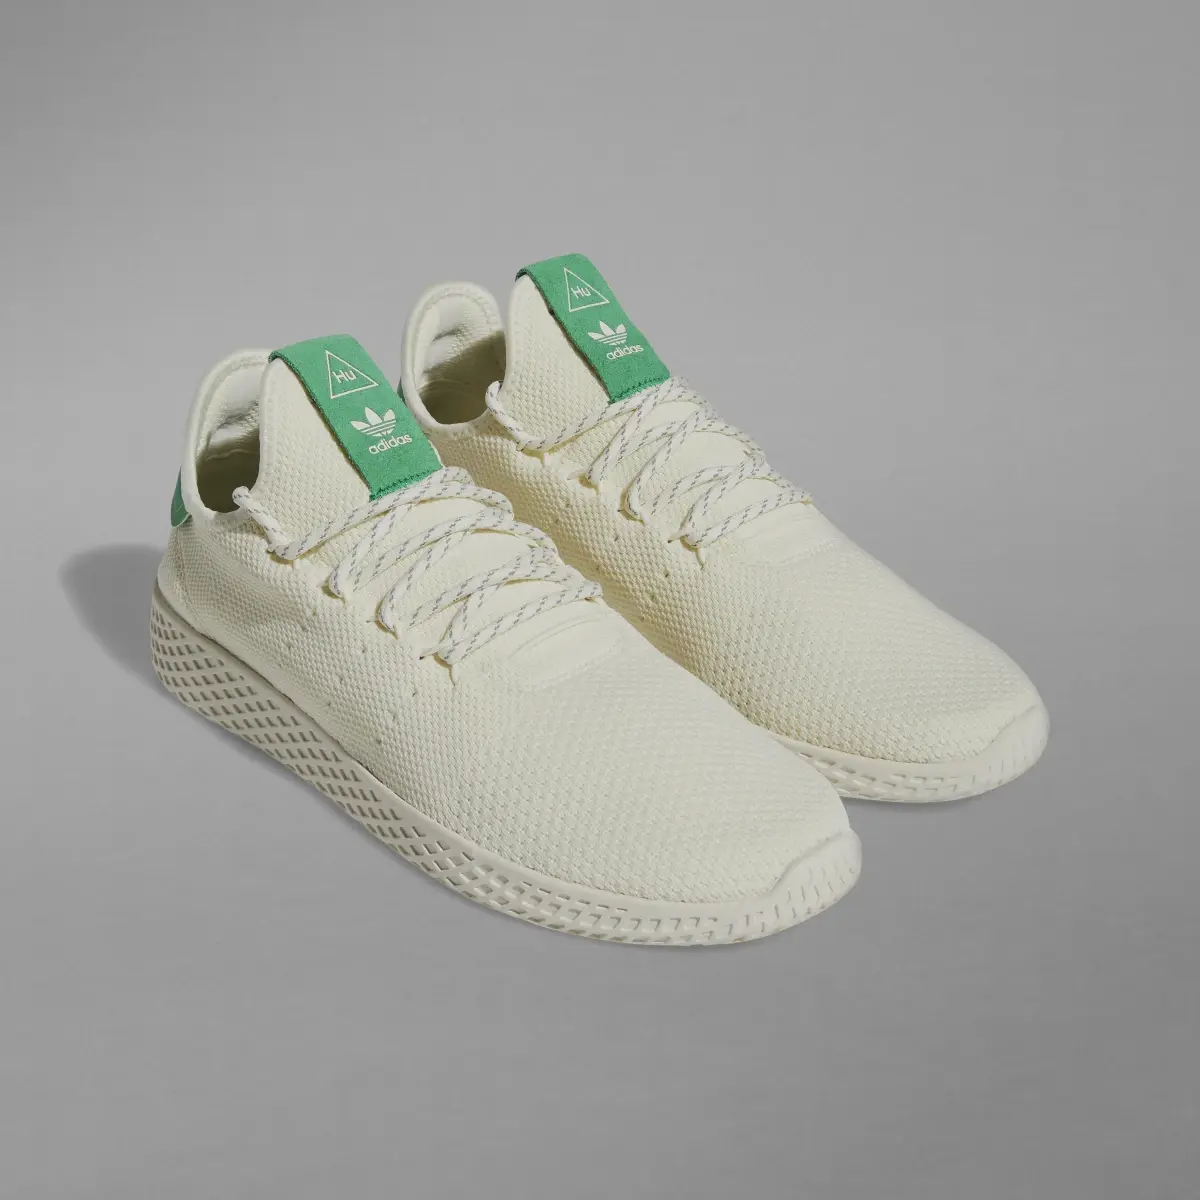 Adidas Tennis Hu Shoes. 3